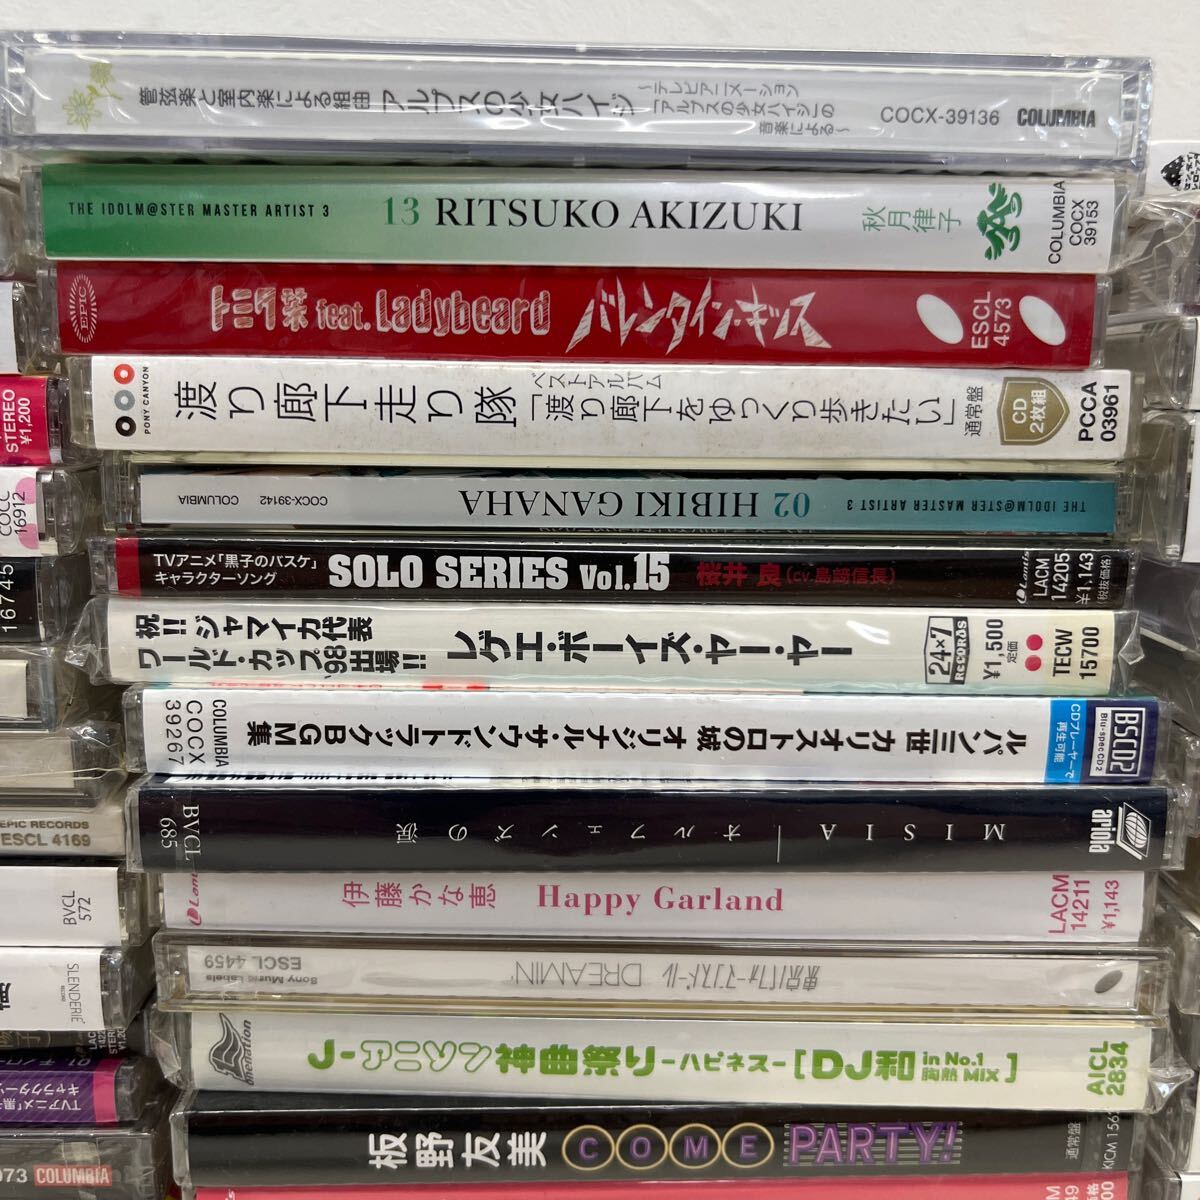 1 иен старт много не использовался нераспечатанный образец товар CD продажа комплектом песни из аниме тематическая песня аниме J-POP песни из аниме 